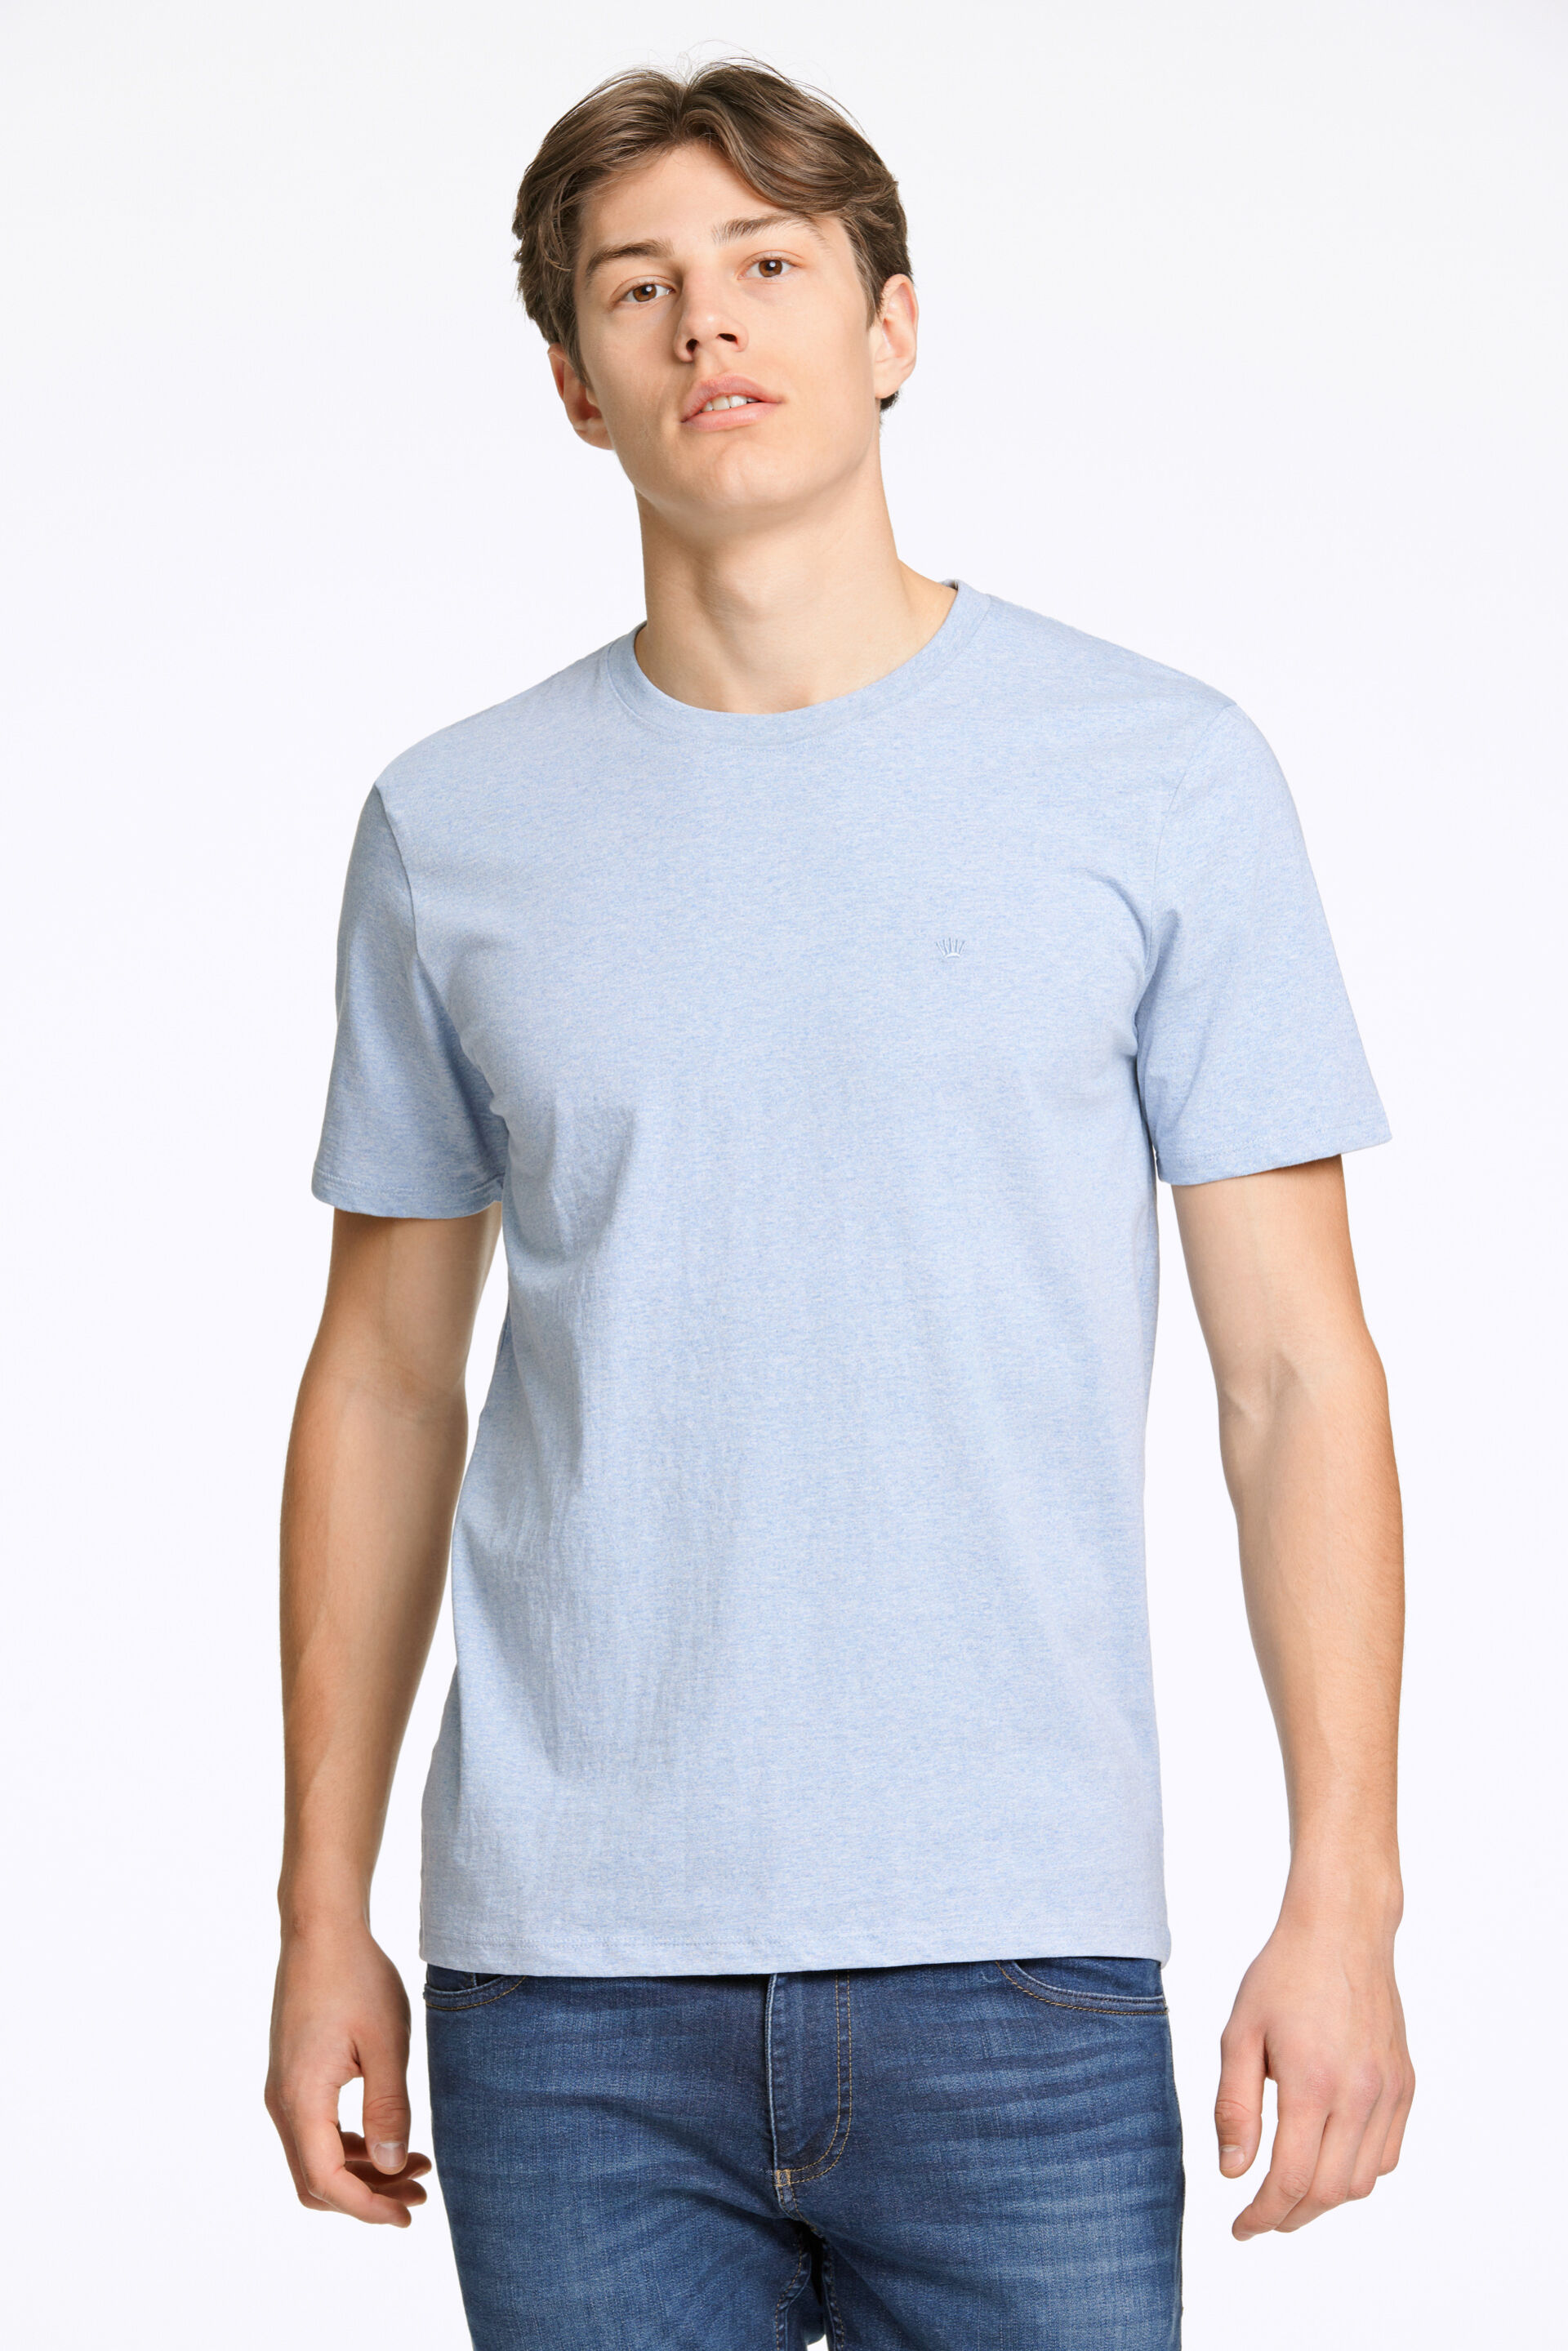 T-shirt T-shirt Blå 60-455009